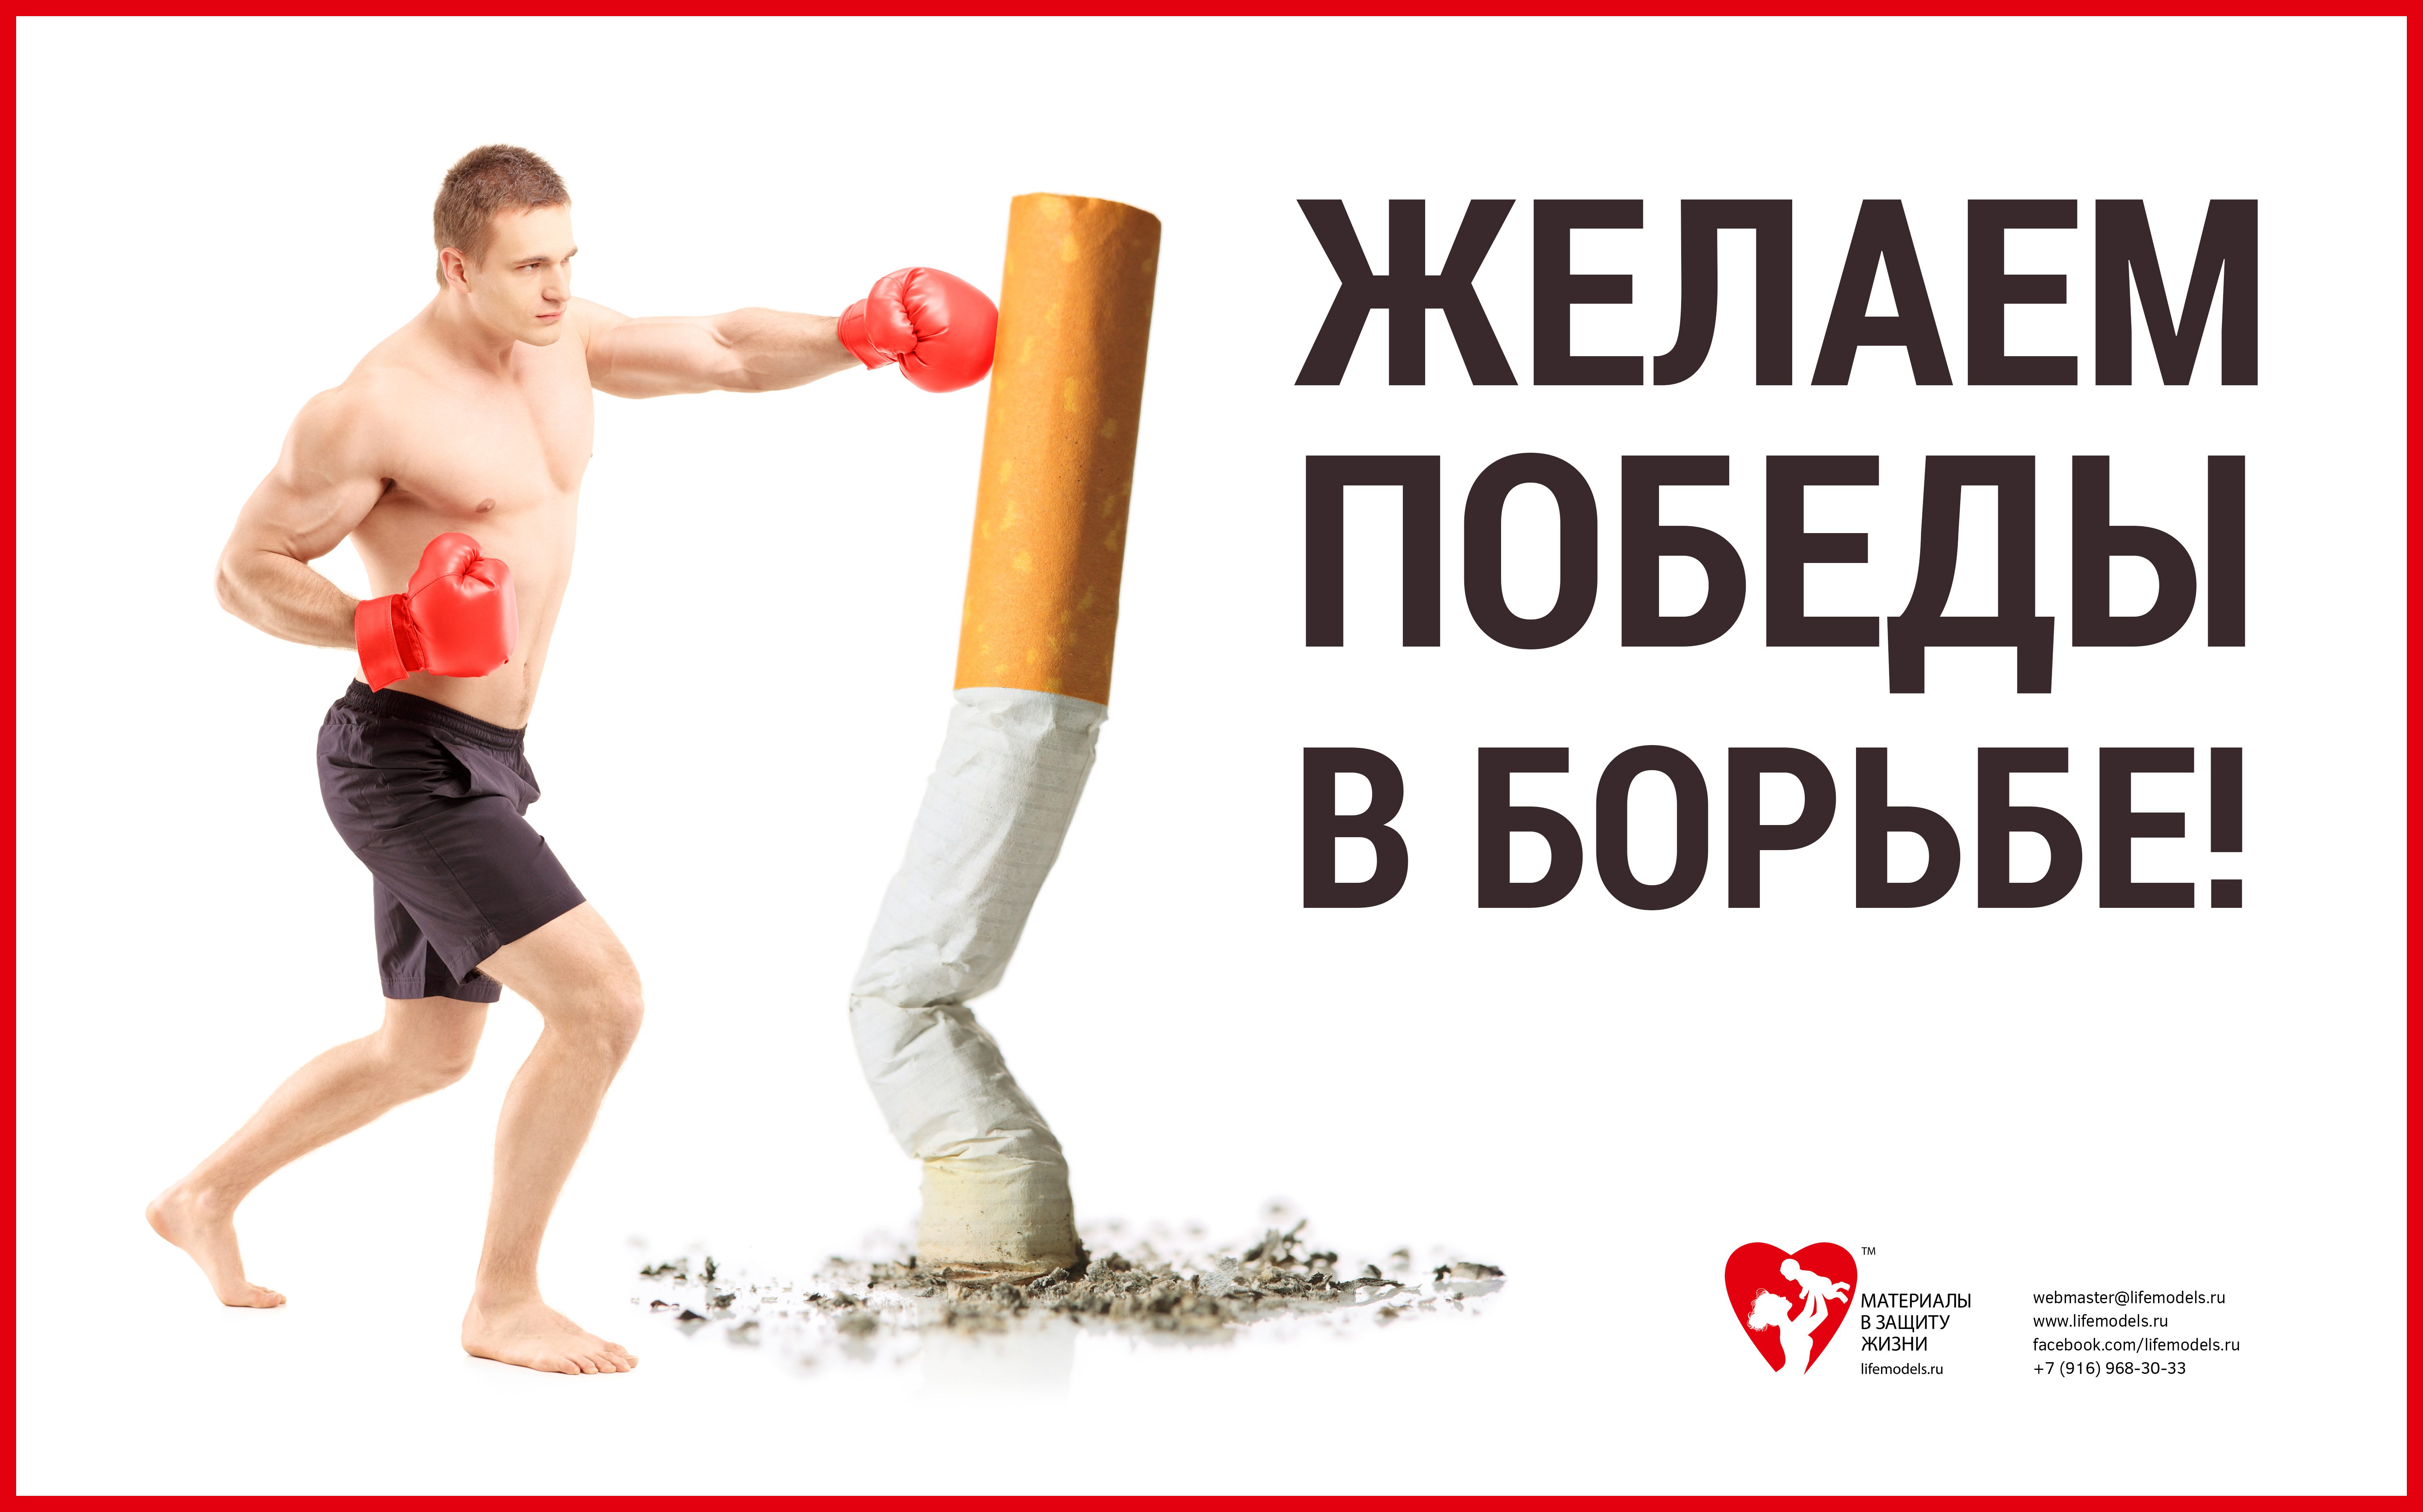 Боремся за победу слышим. Баннер против курения. Спорт против курения. Борьба против курения. Реклама борьба с курением.